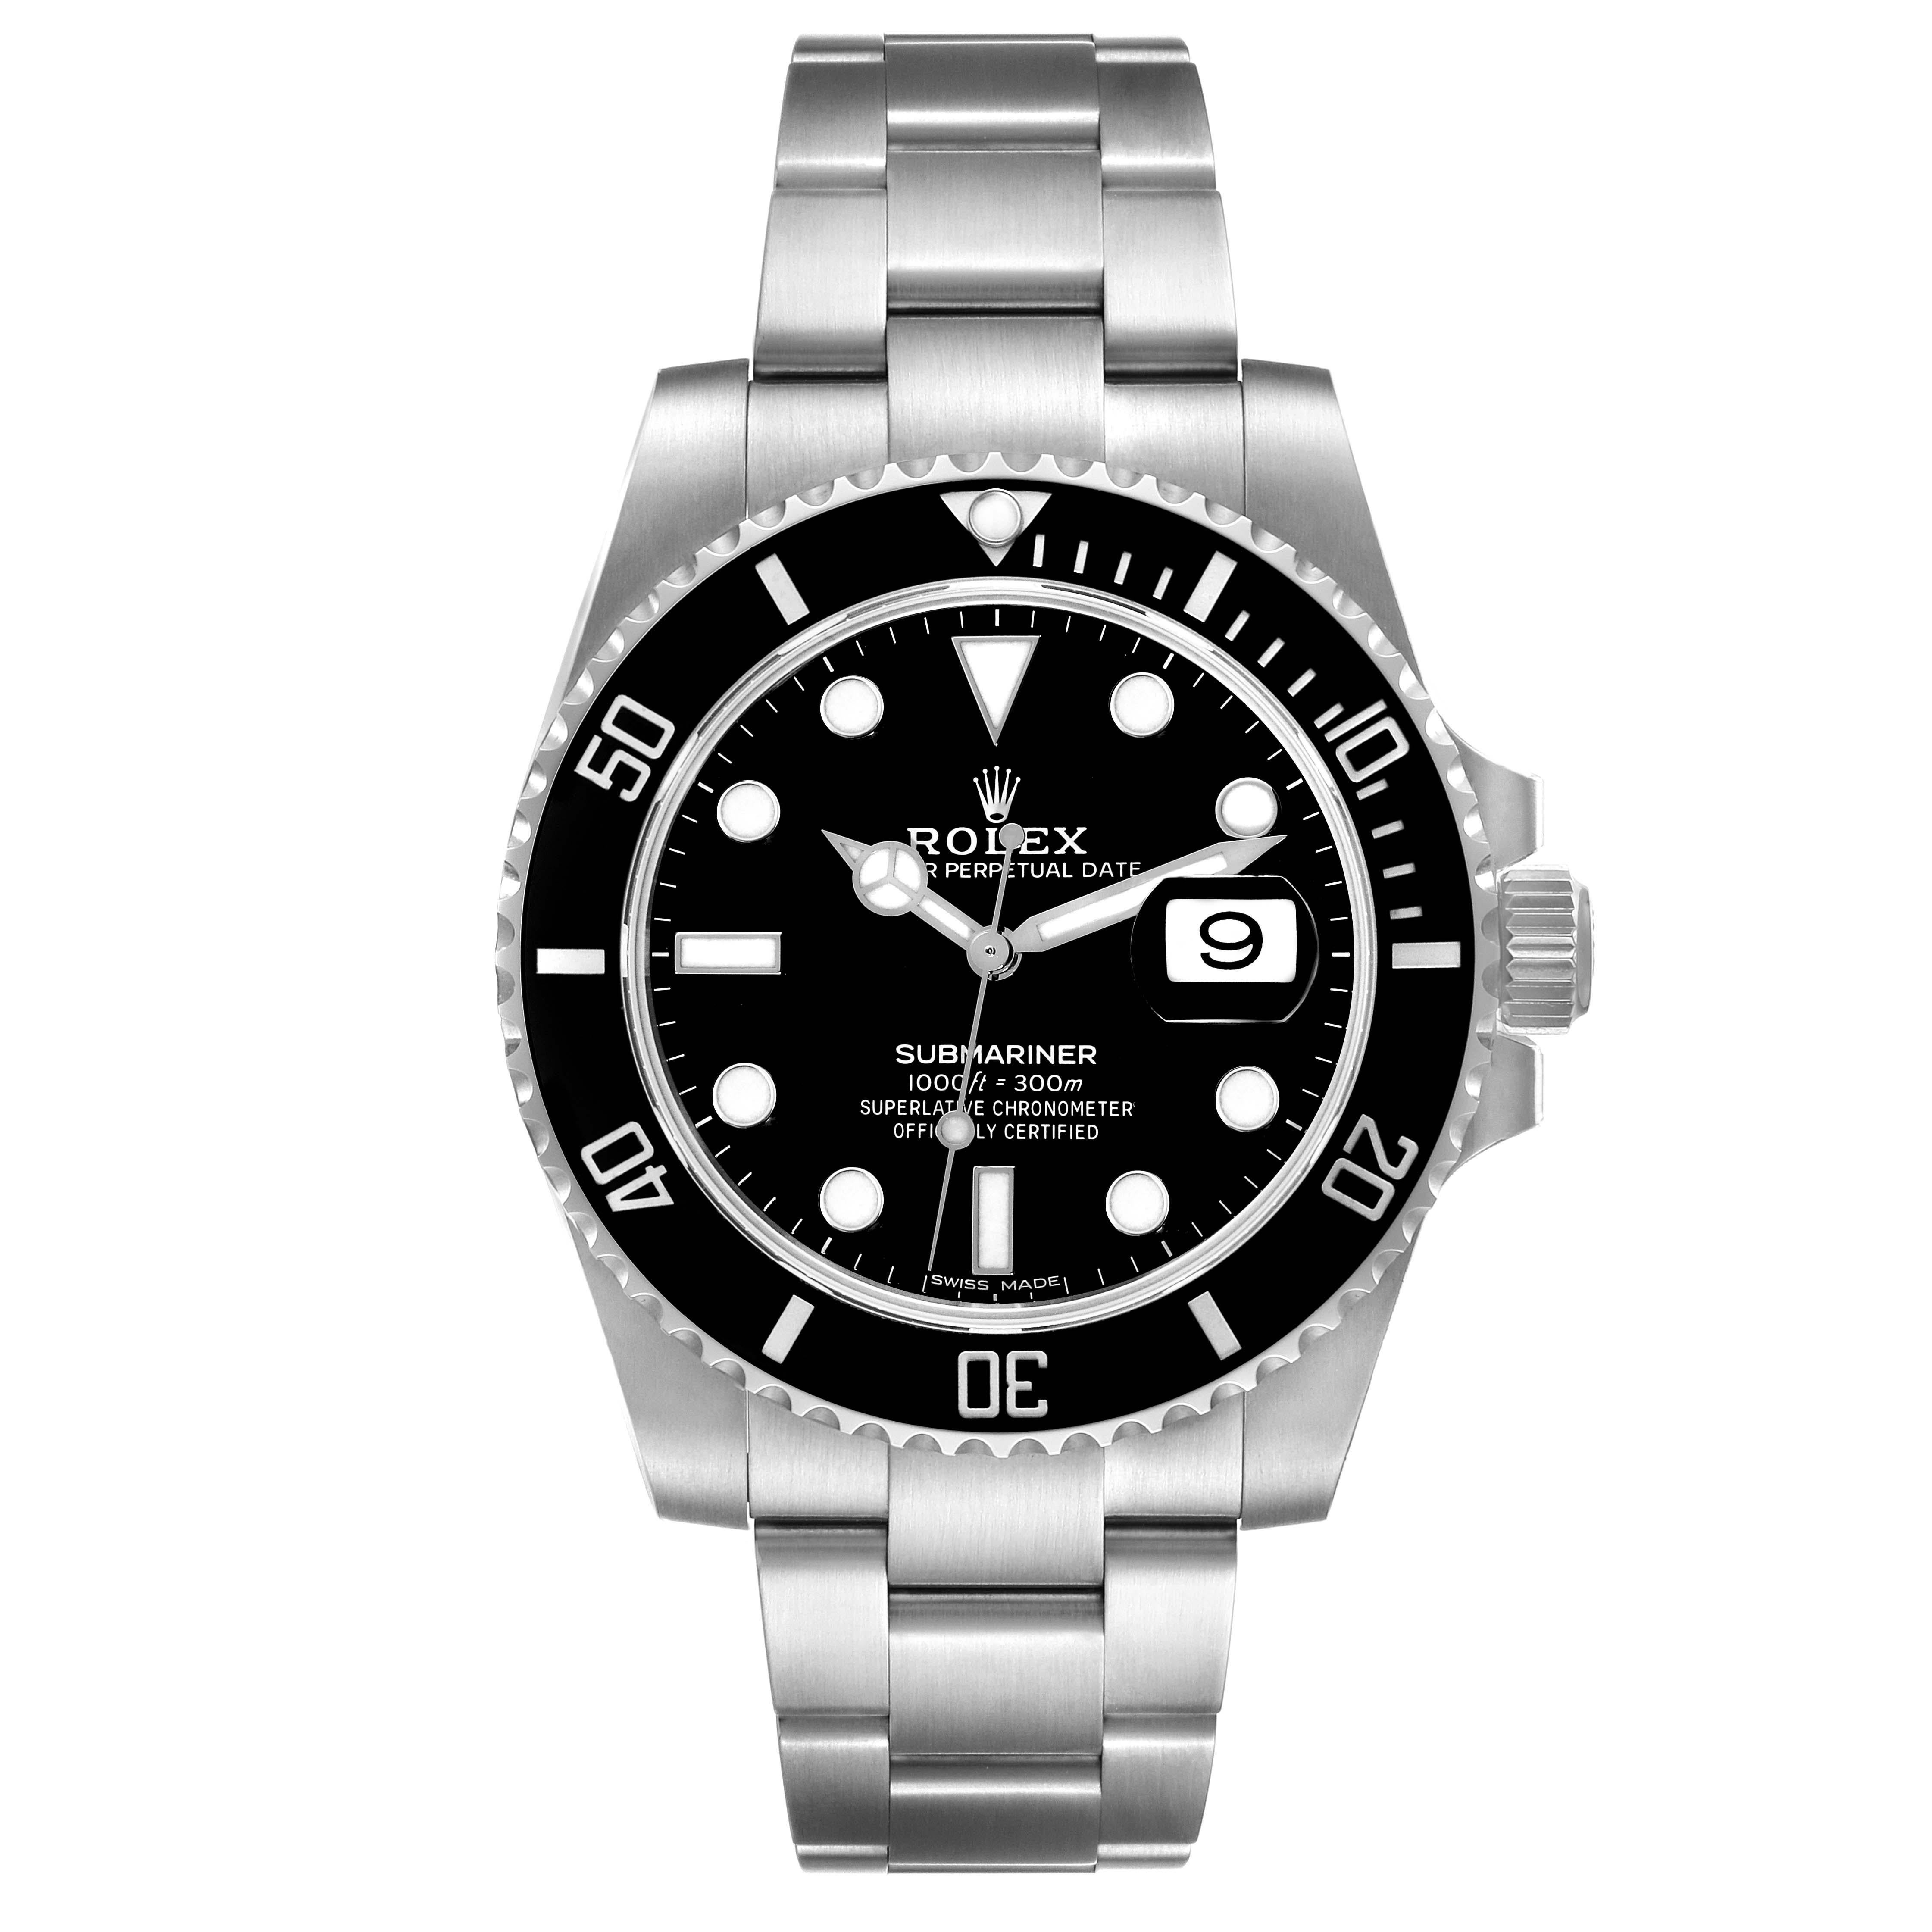 Rolex Submariner Date Black Dial Steel Mens Watch 116610. Mouvement automatique à remontage automatique, officiellement certifié chronomètre. Boîtier en acier inoxydable de 40 mm de diamètre. Logo Rolex sur la couronne. Lunette tournante